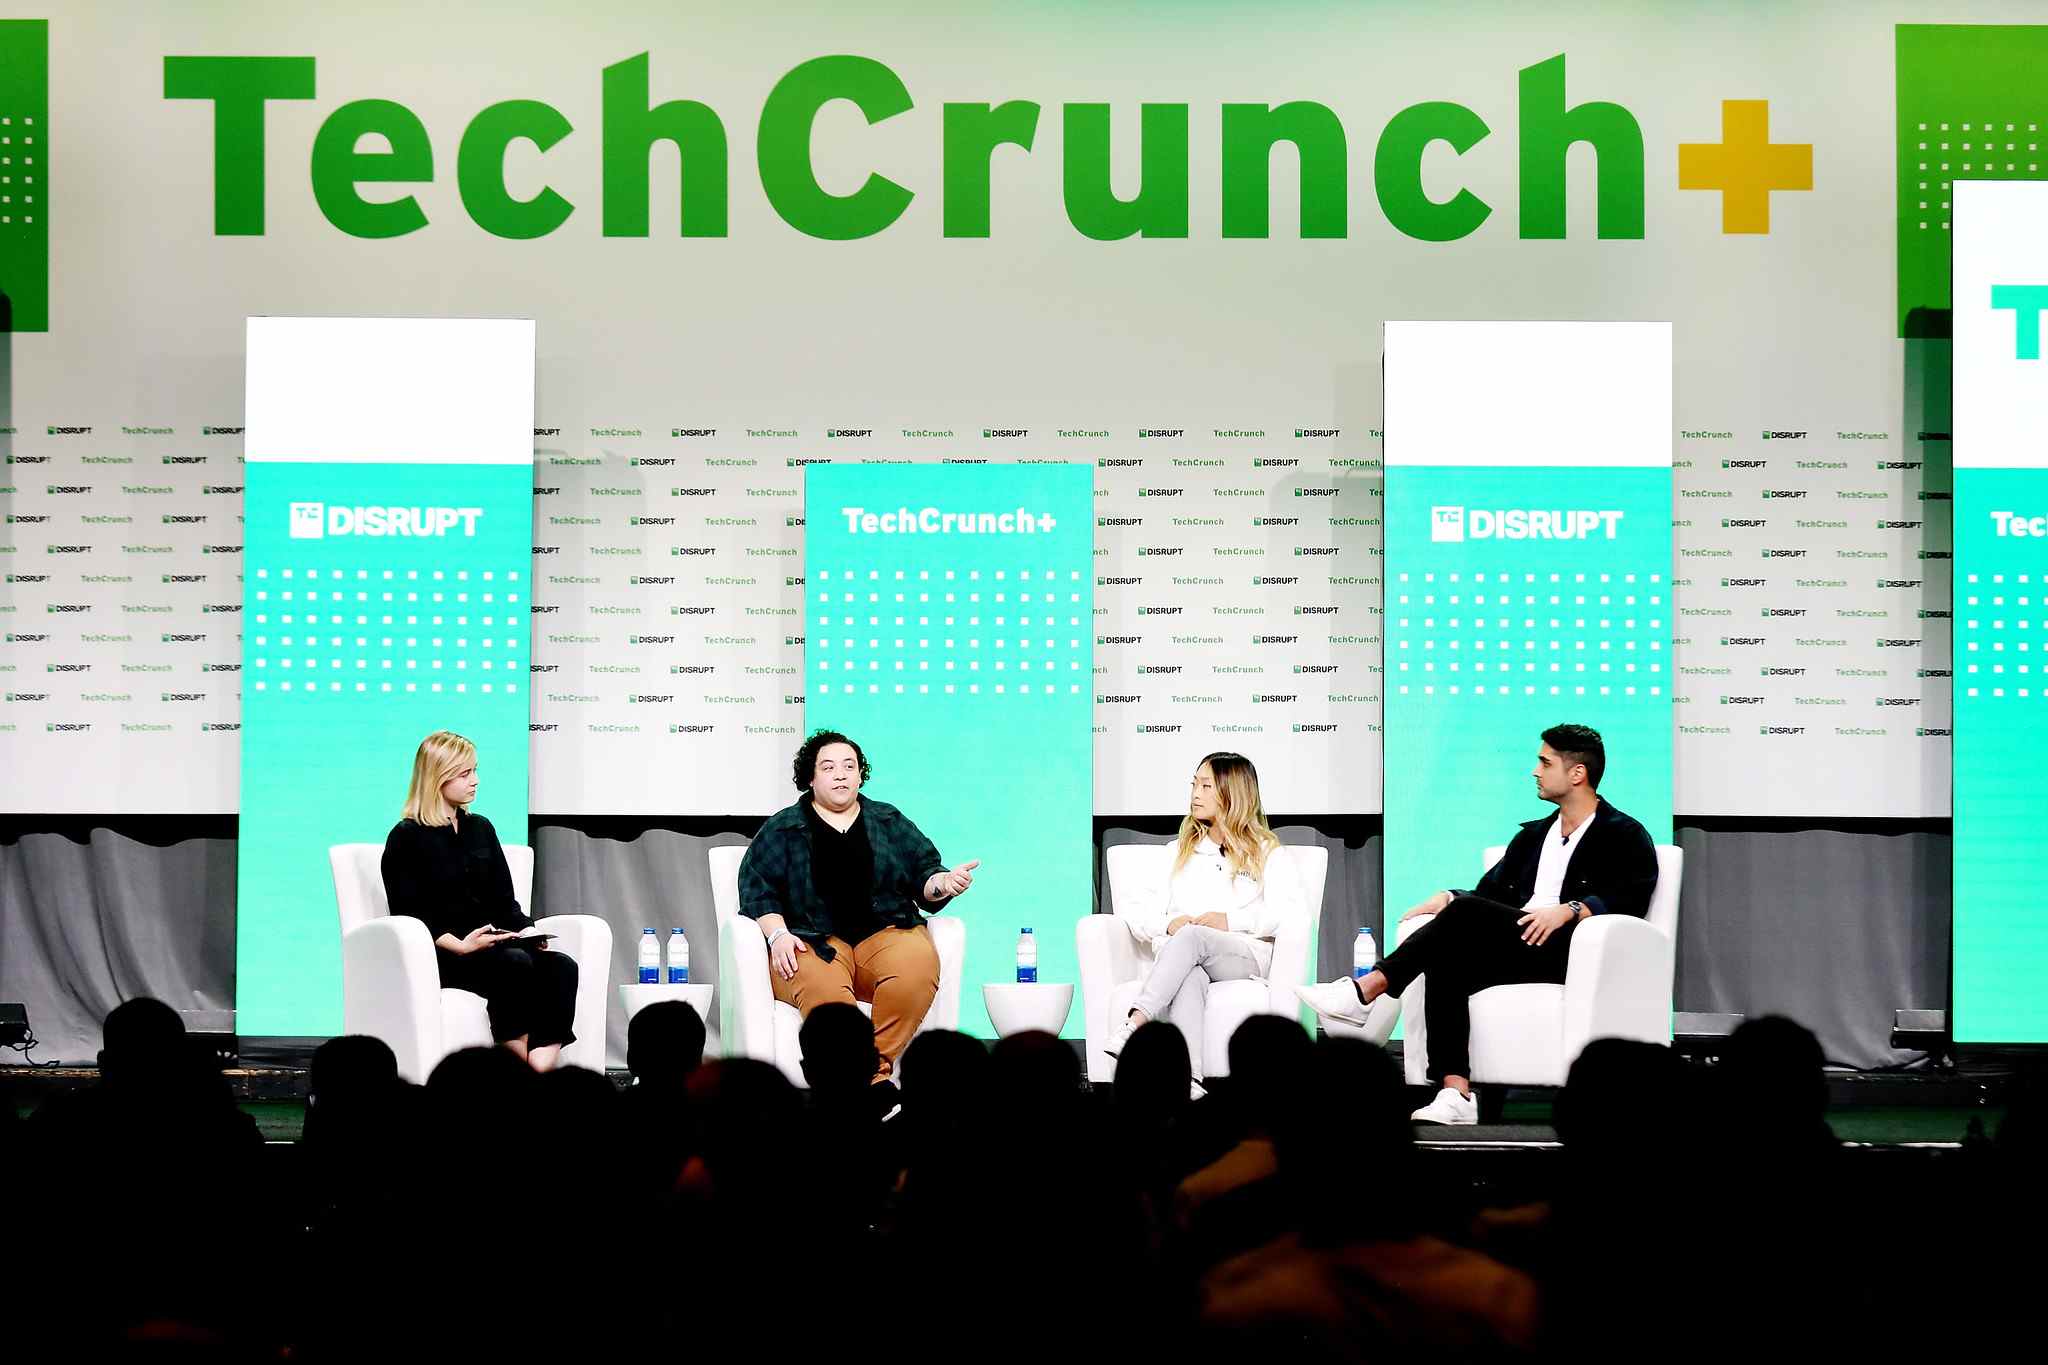 Rebecca Szkutak, rédactrice principale chez TechCrunch+ ;  Amanda DoAmaral, co-fondatrice et PDG, Fiveable ;  Sara Du, co-fondatrice et PDG, Alloy Automation ;  et Arman Hezarkhani, fondateur et PDG de Parthean, prennent la parole sur scène lors de TechCrunch Disrupt 2022.